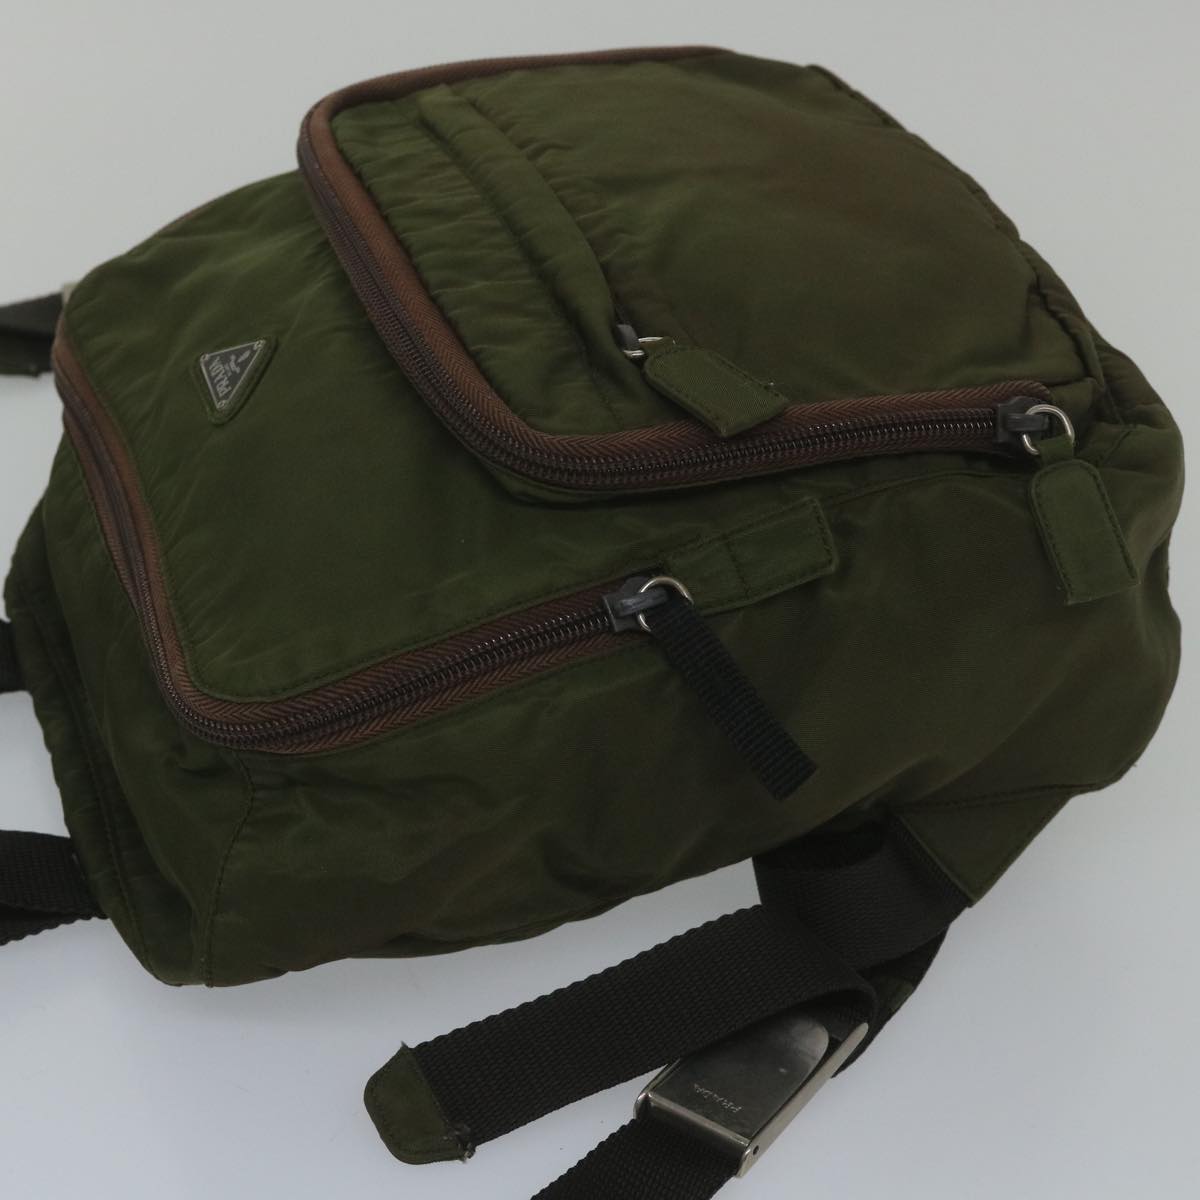 PRADA Backpack Nylon Green Auth bs10212